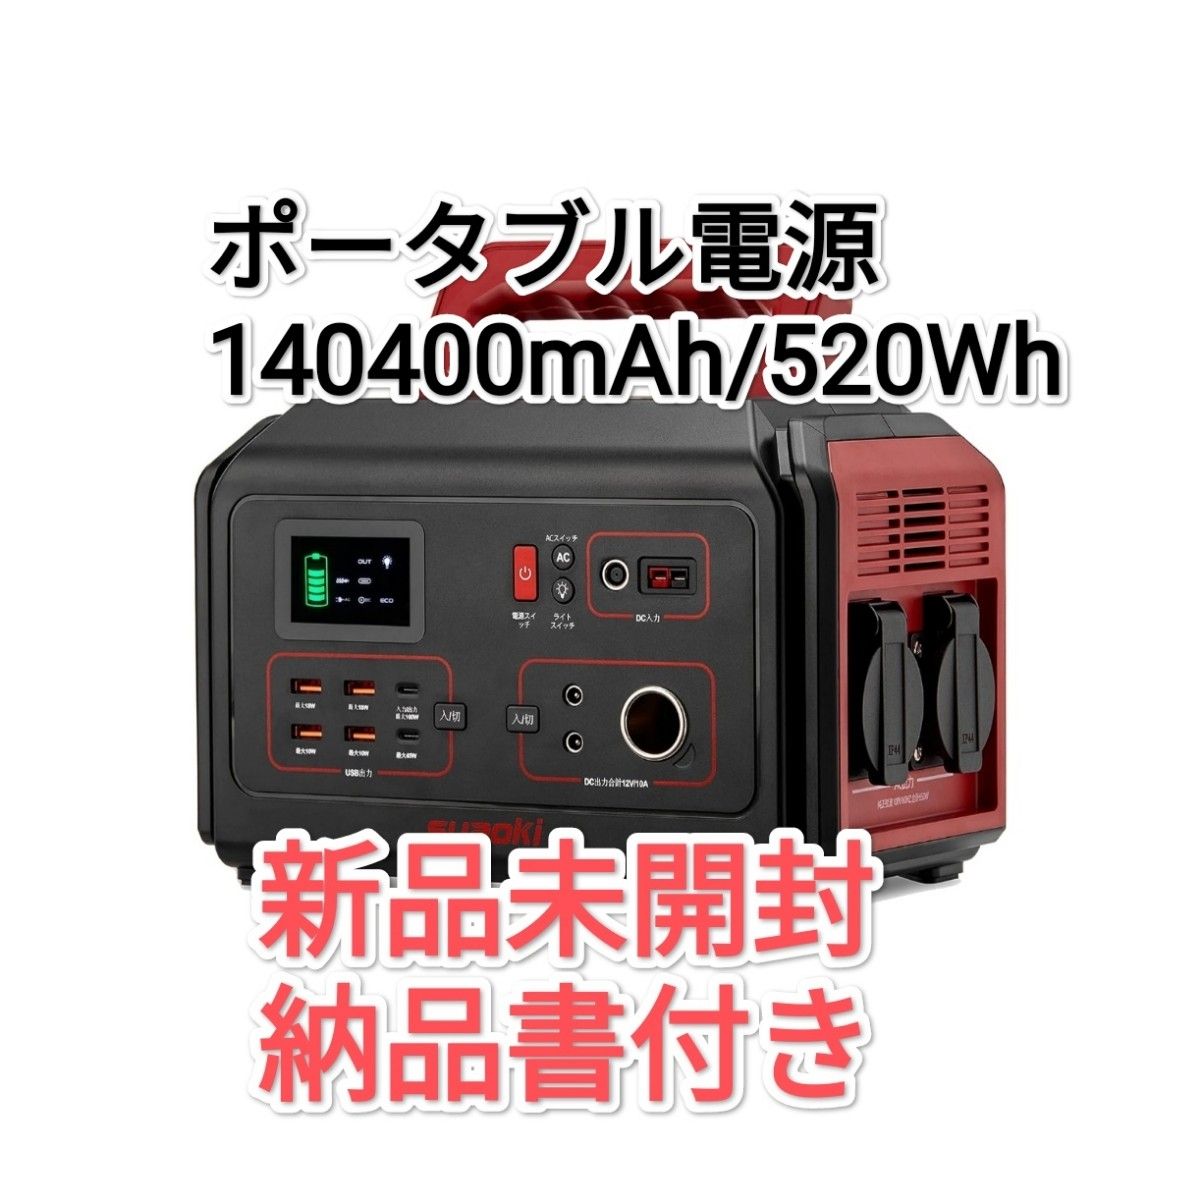 ポータブル電源 650W 非常用蓄電池 140400mAh/520Wh 大容量 バッテリー 軽量 小型 キャンプ